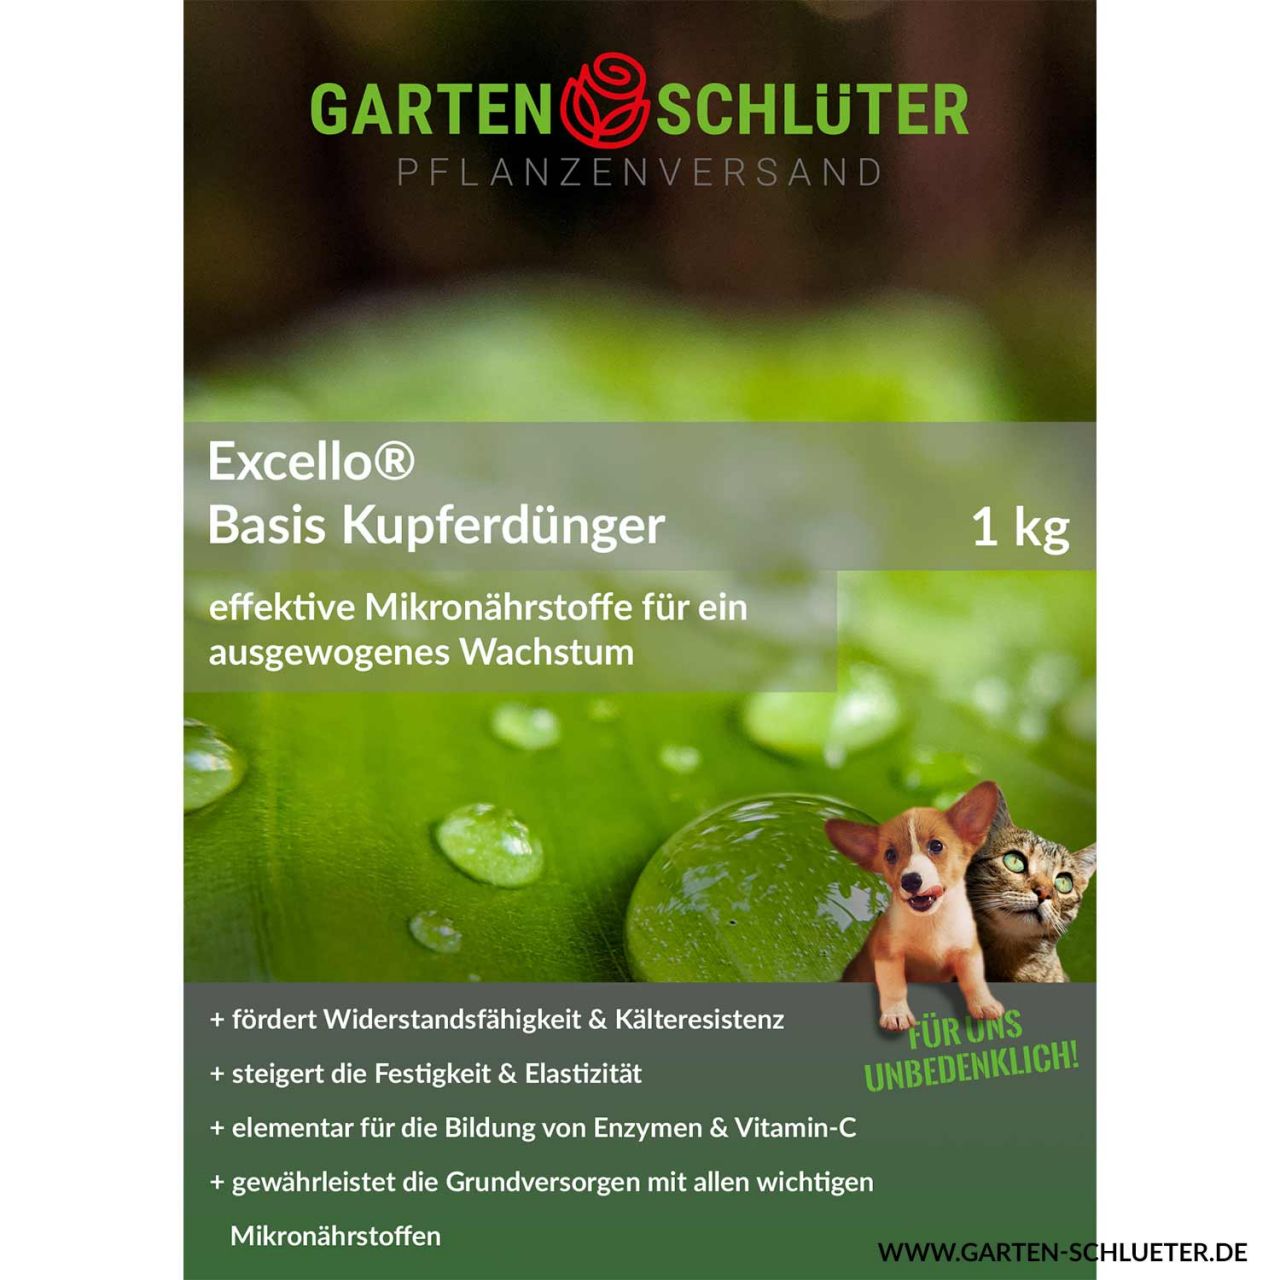 Schlüter's Excello-Basis-Kupferdünger - 1 kg von Garten Schlüter